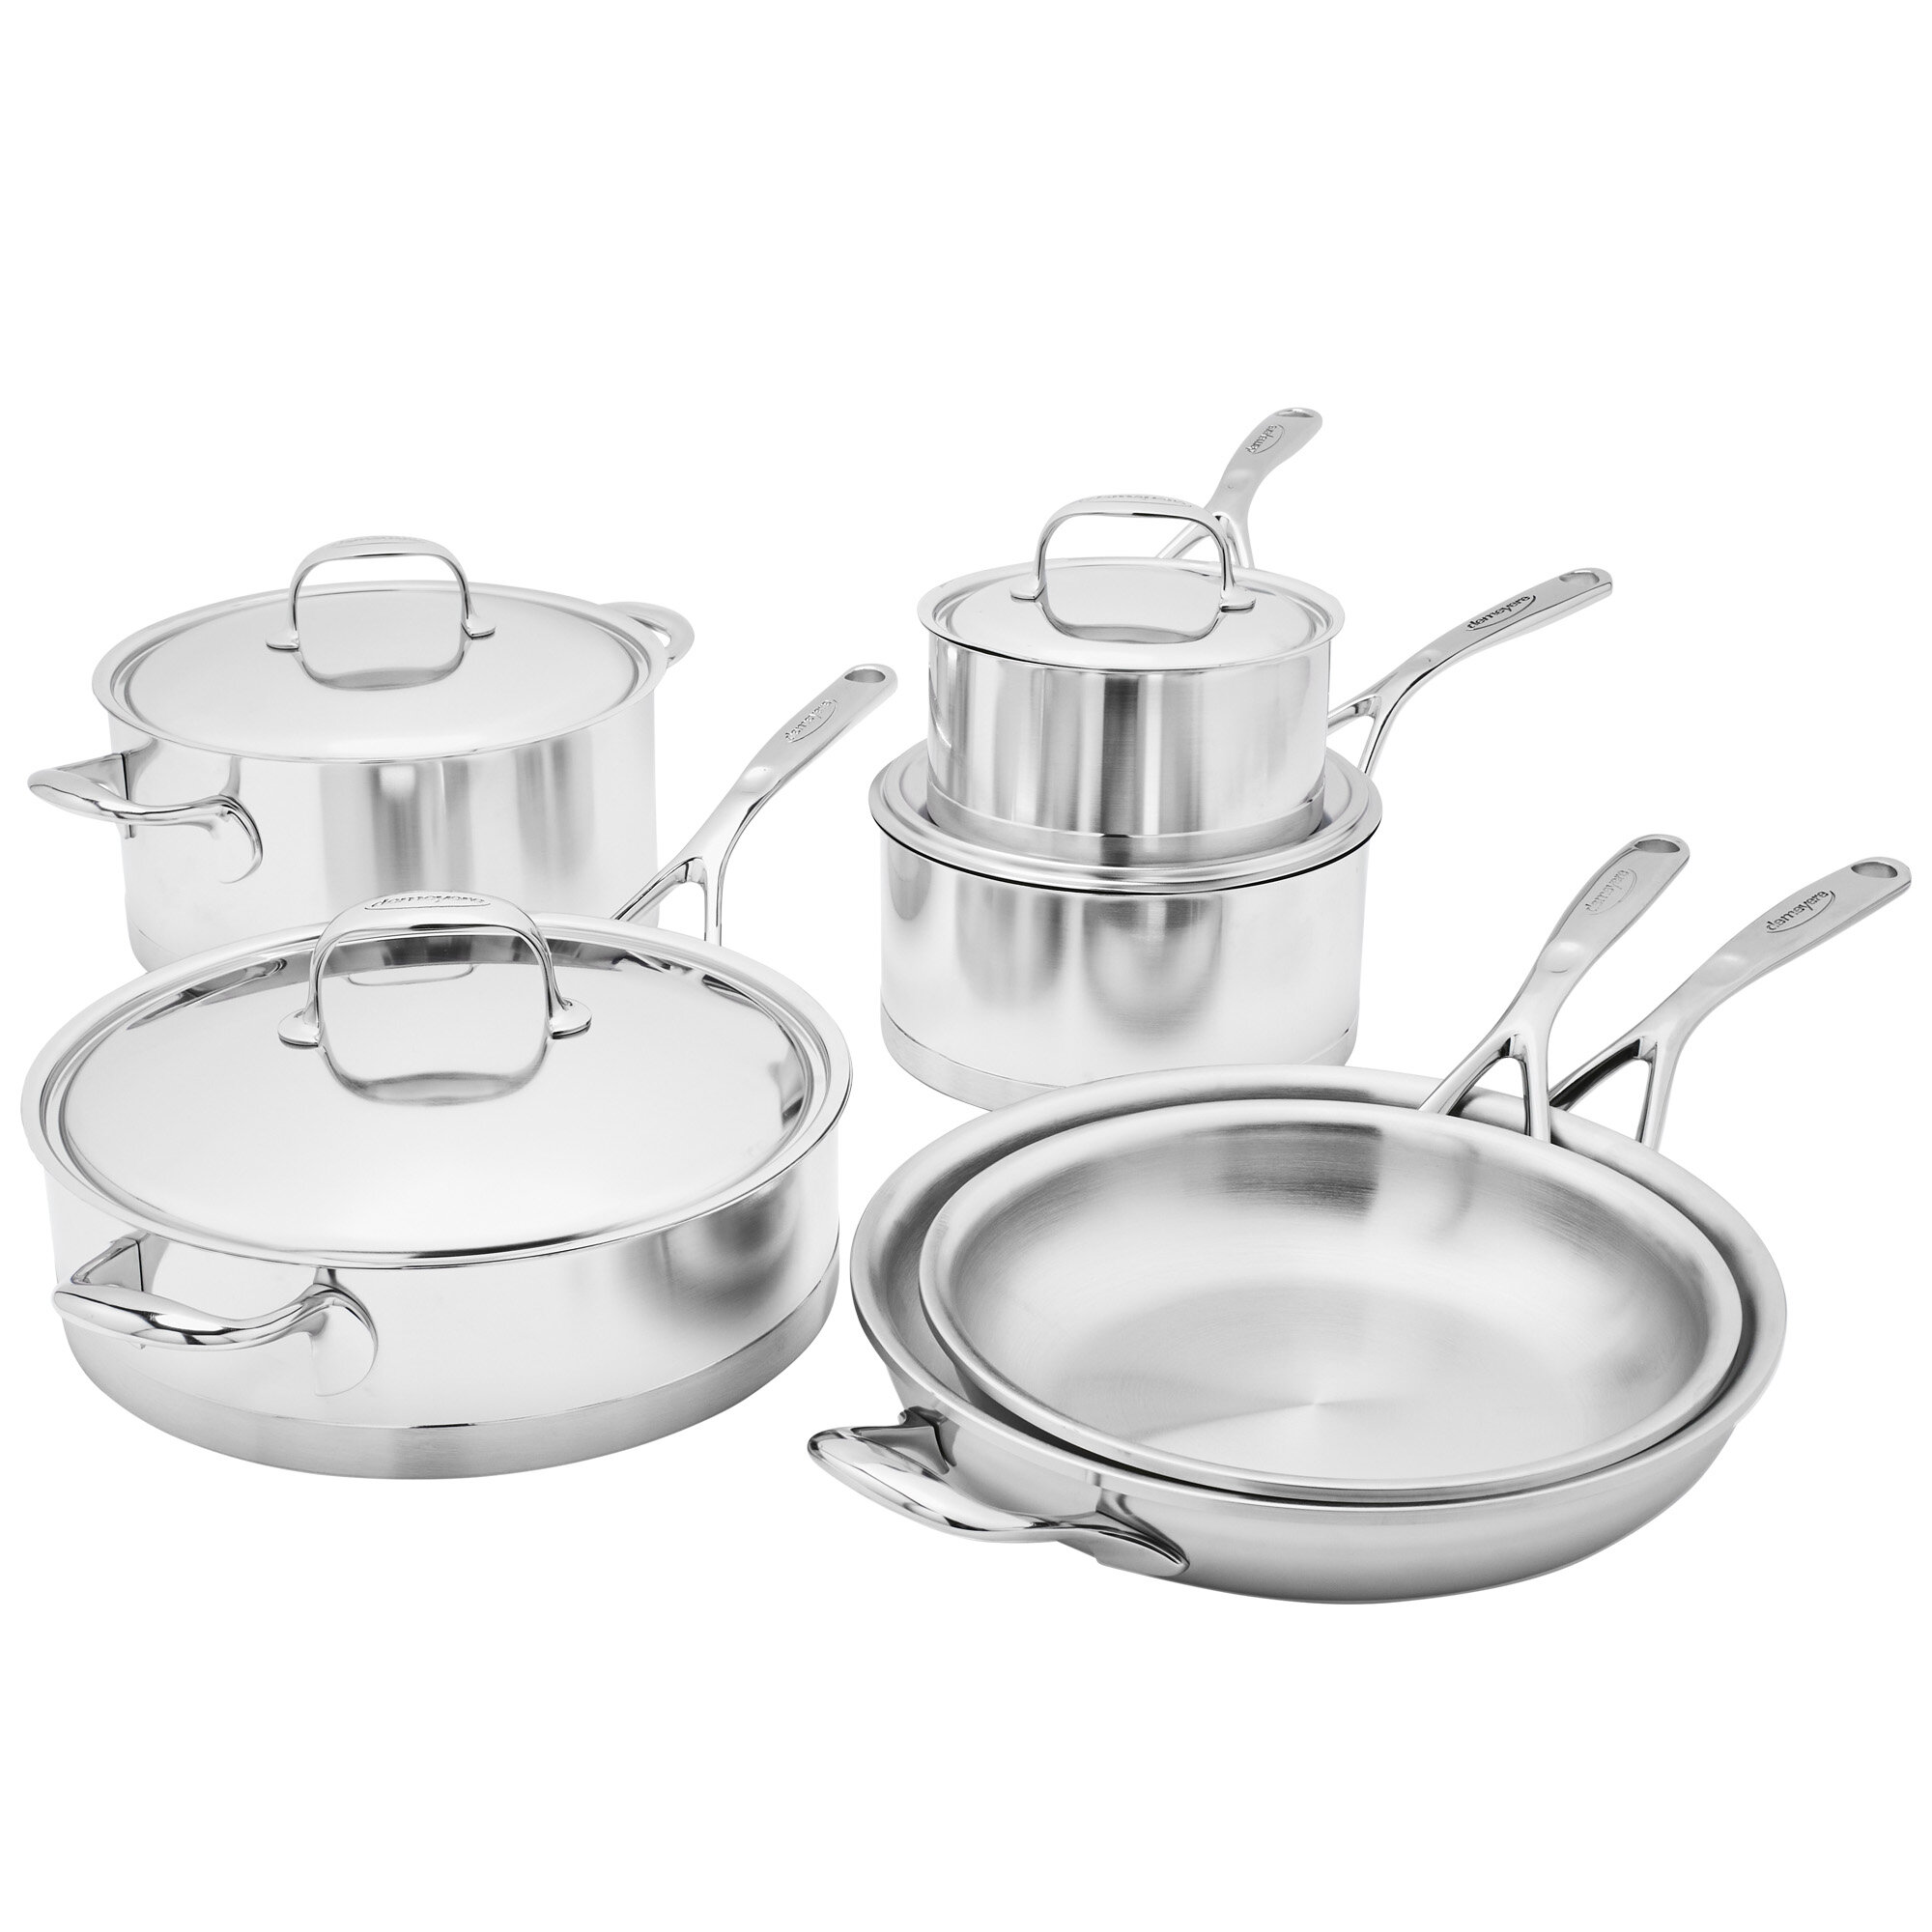 https://assets.wfcdn.com/im/44551254/compr-r85/1151/115143210/demeyere-atlantis-10-piece-stainless-steel-cookware-set.jpg